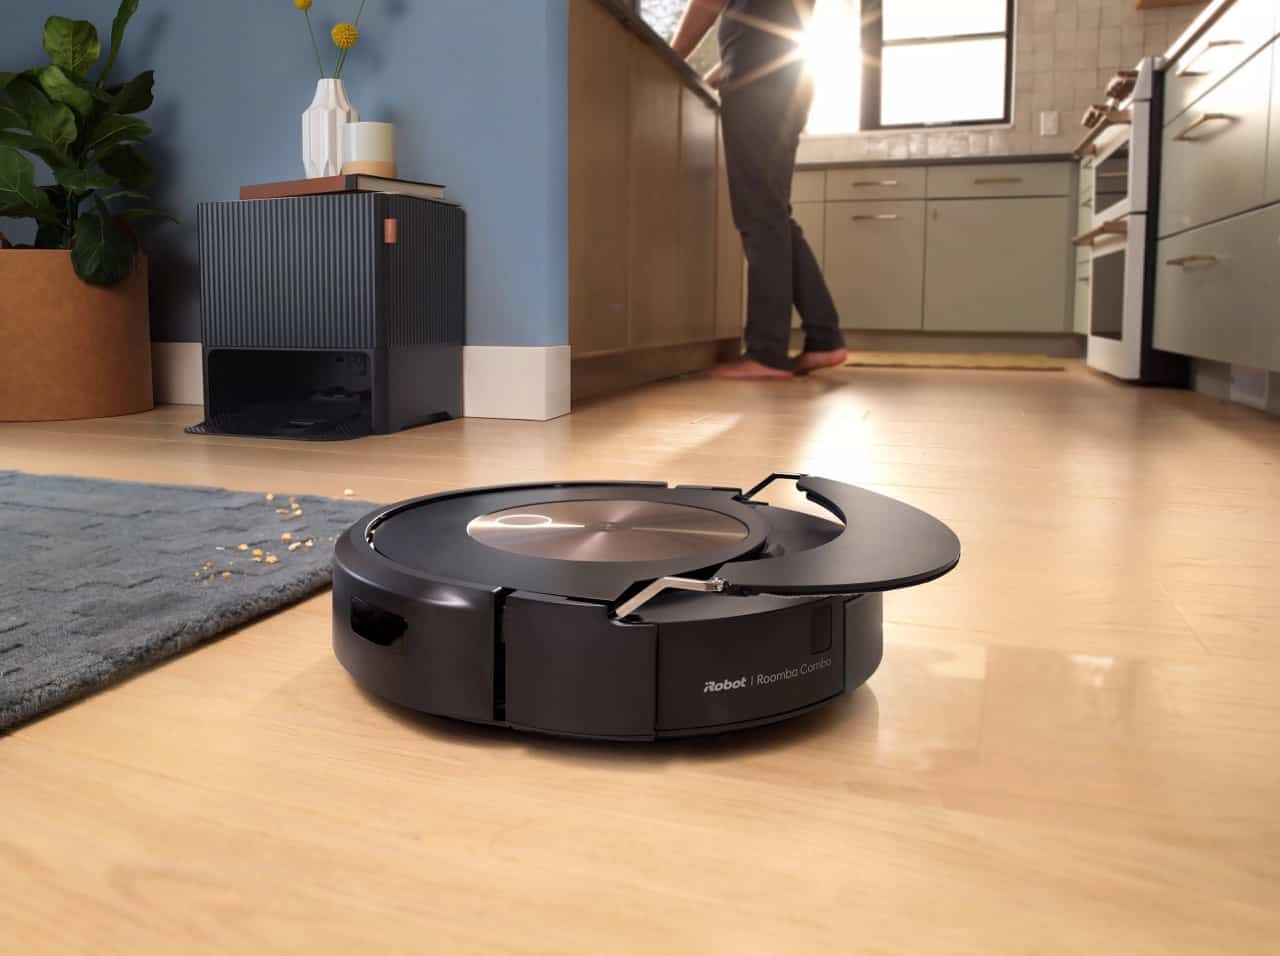 Facilite el mantenimiento del hogar con iRobot Roomba Combo J9+